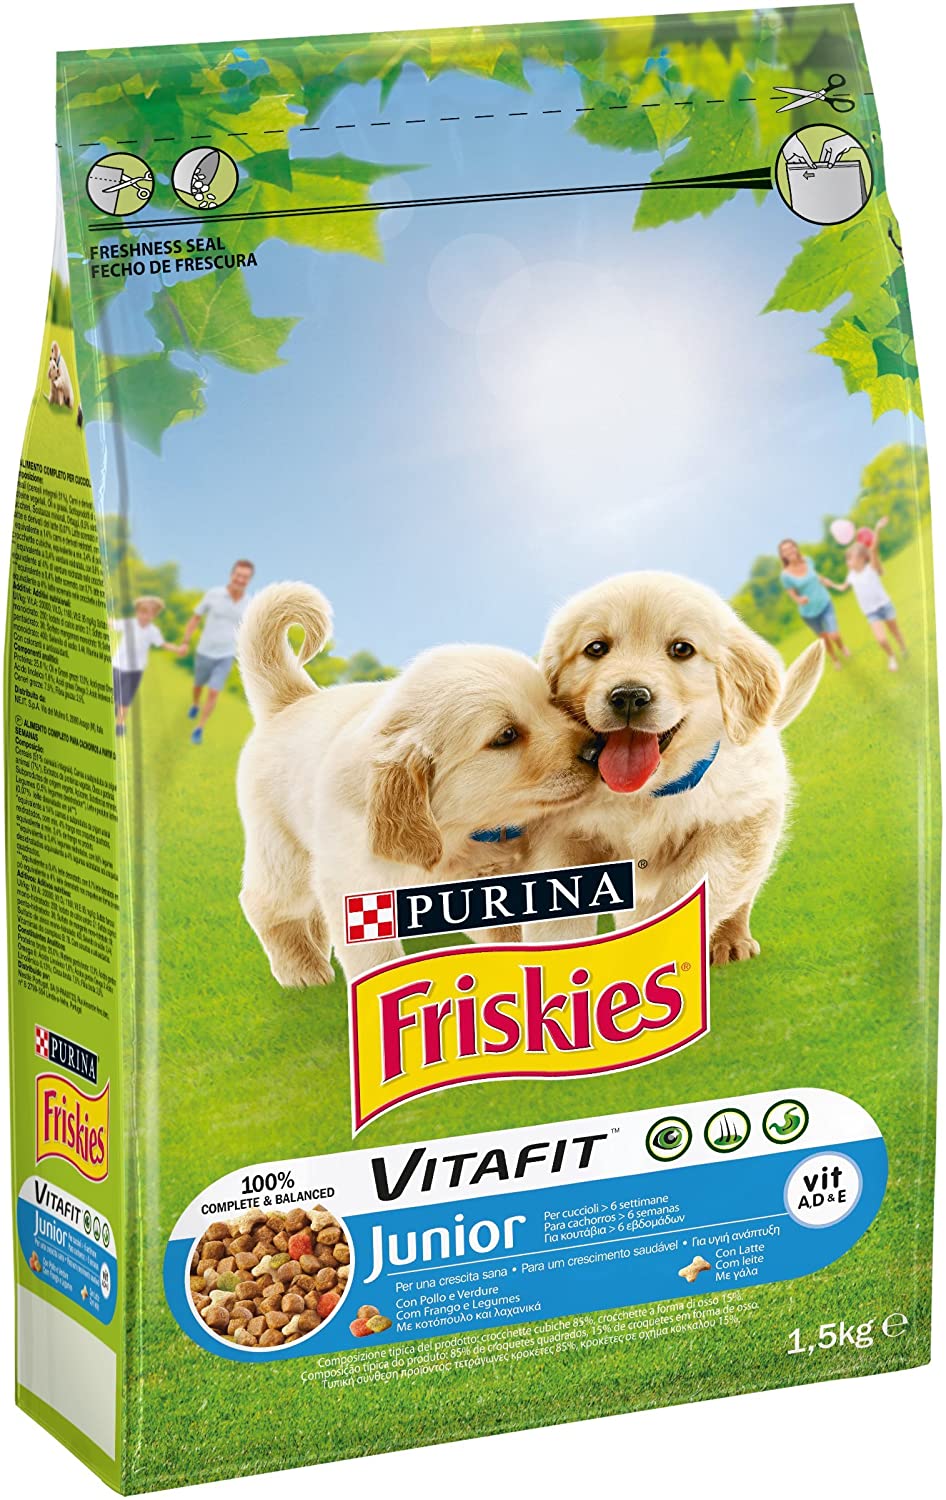  Friskies vitafit Junior pienso para el Perro, con Pollo y l 'Aggiunta de Leche y Verduras, 1.5 kg 